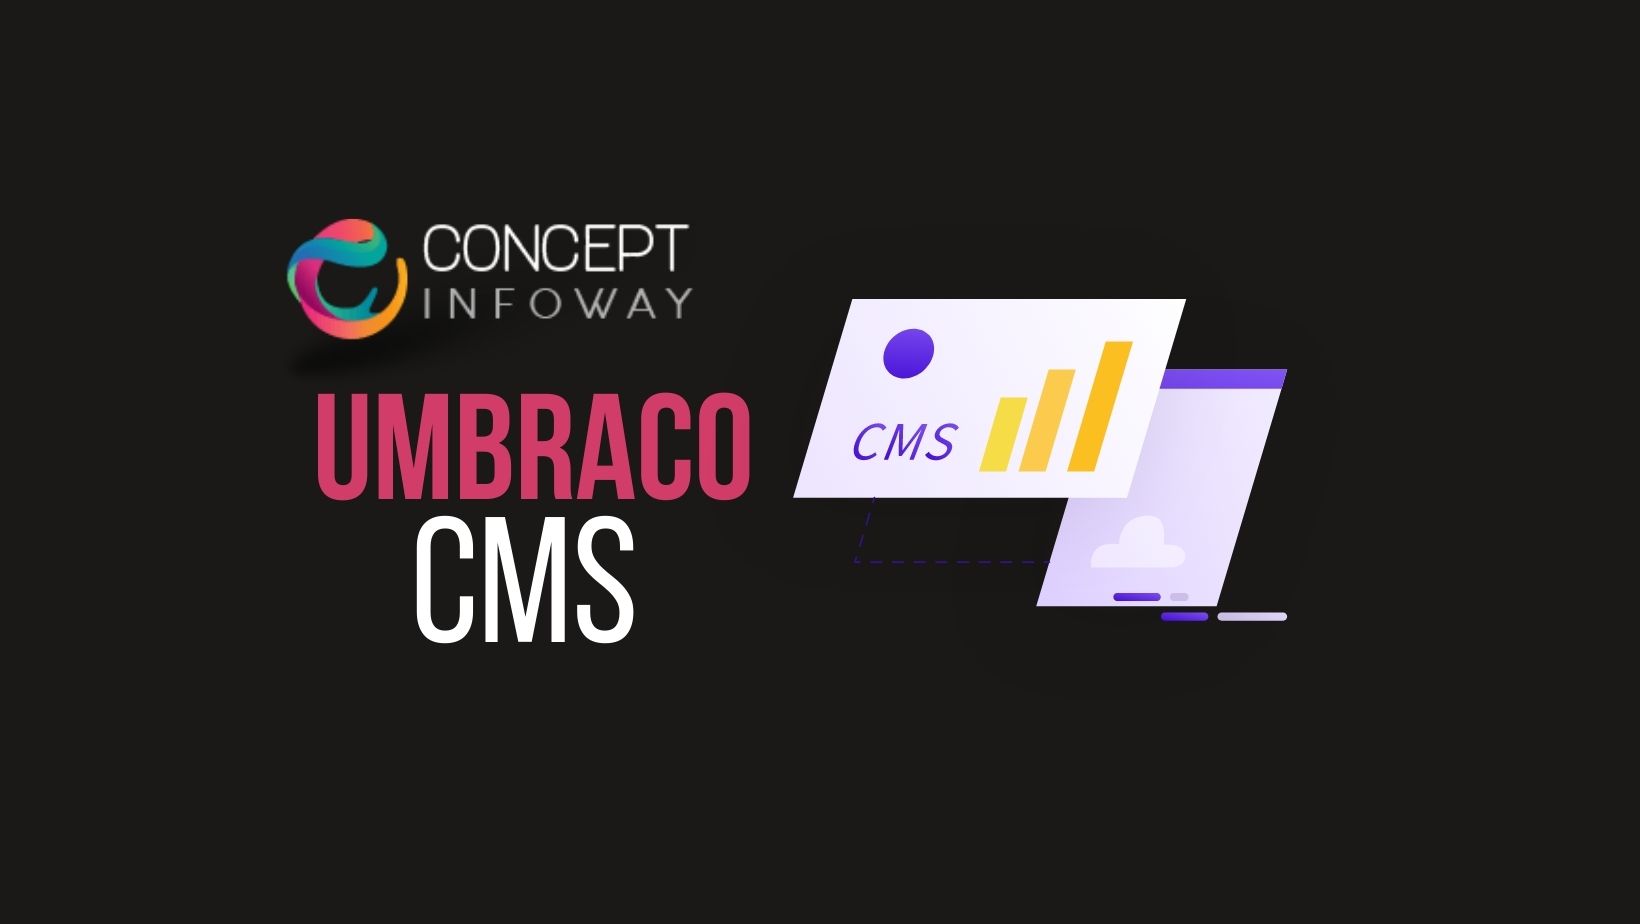 Umbraco CMS - Concept Infoway